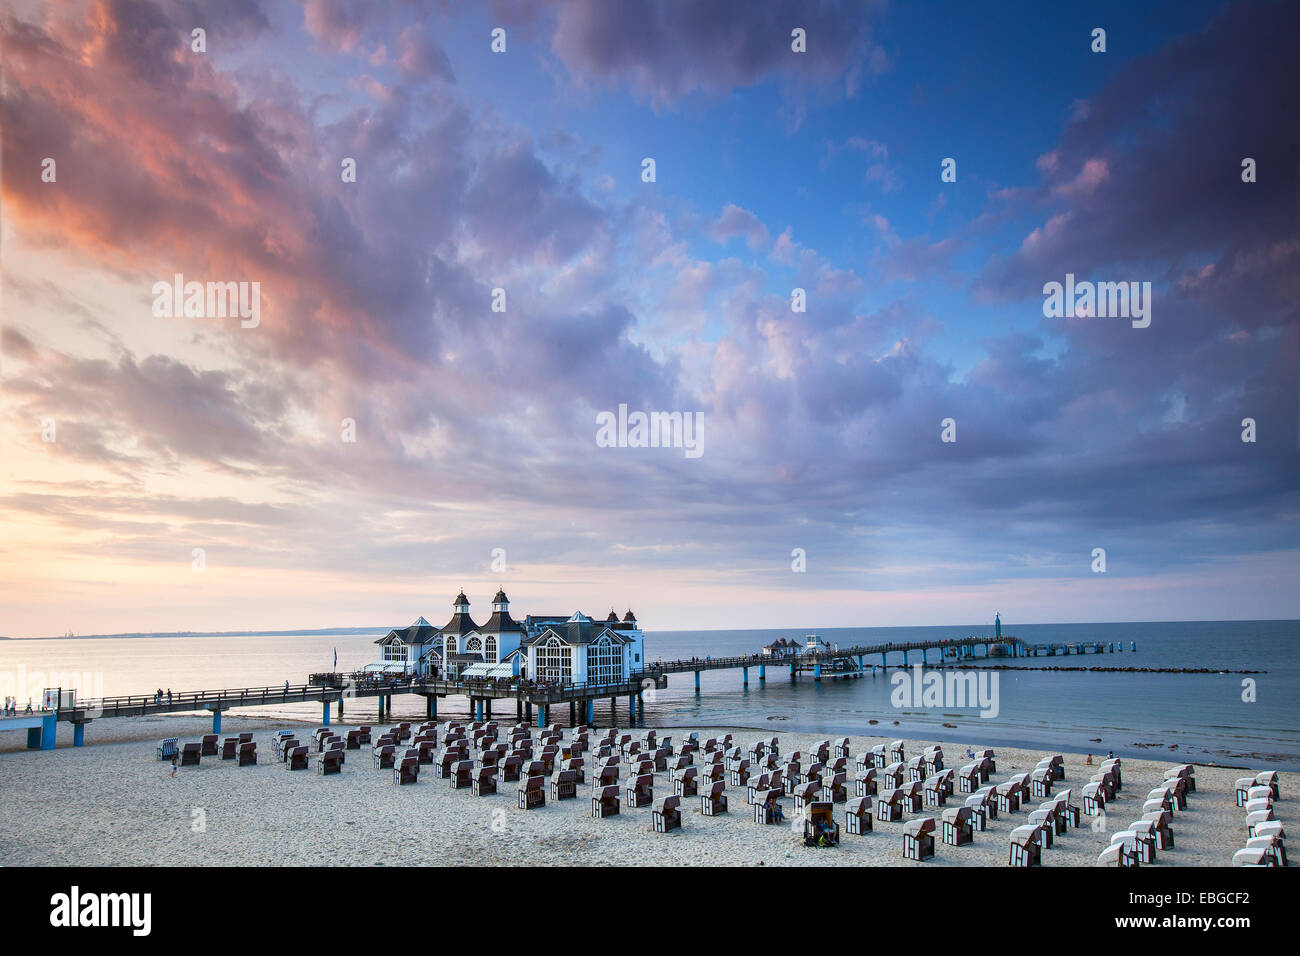 Sellin Pier, Insel Rügen, Mecklenburg-Western Pomerania, Deutschland Stockfoto